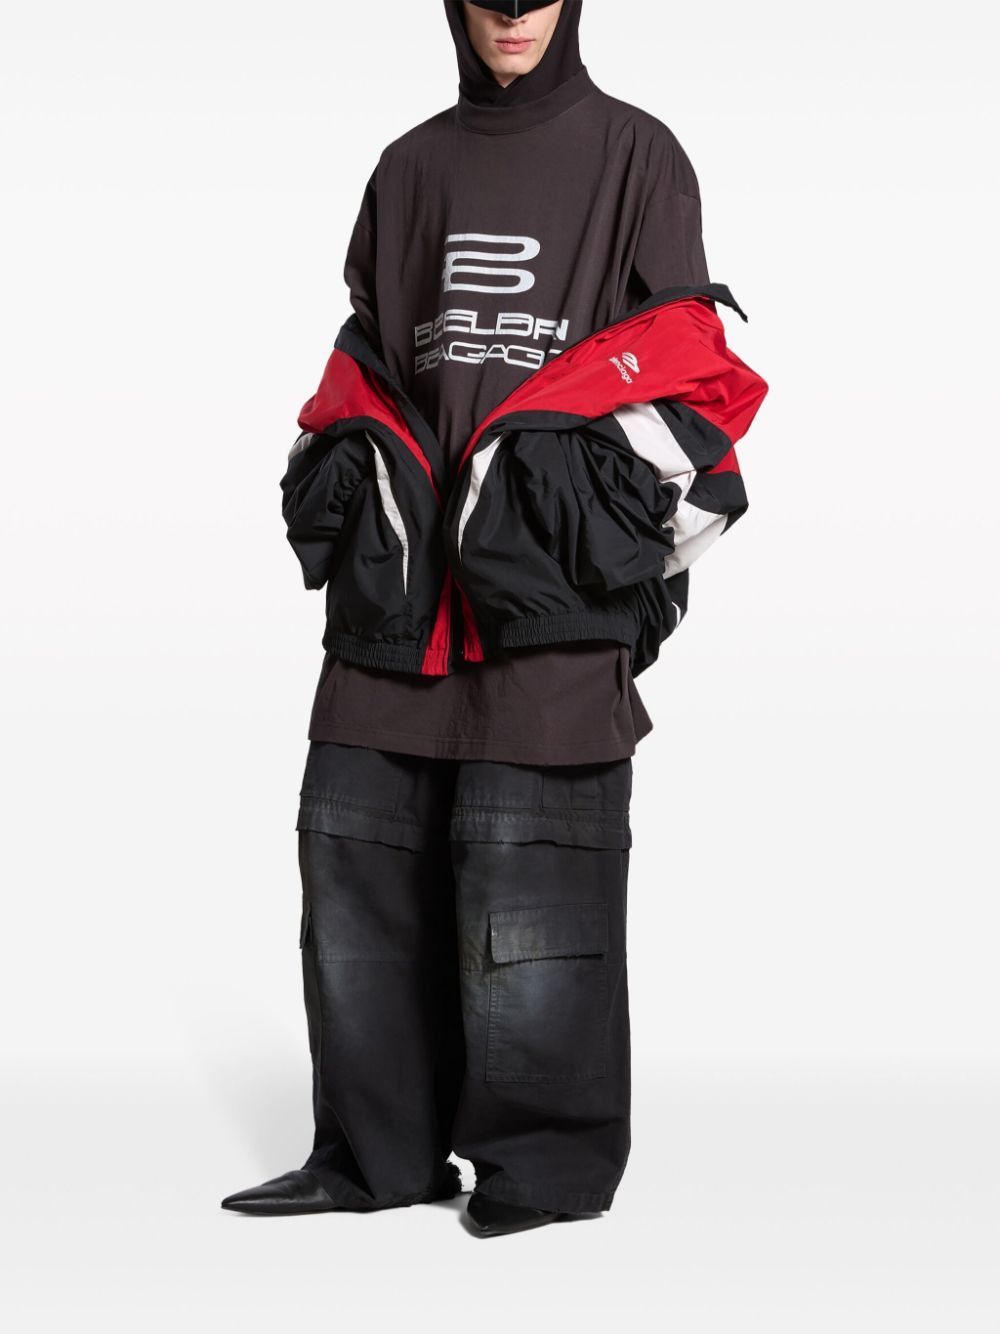 Áo khoác BALENCIAGA OFF SHOULDER TRACKSUIT 3B với hình ảnh thể thao đen, đỏ và trắng